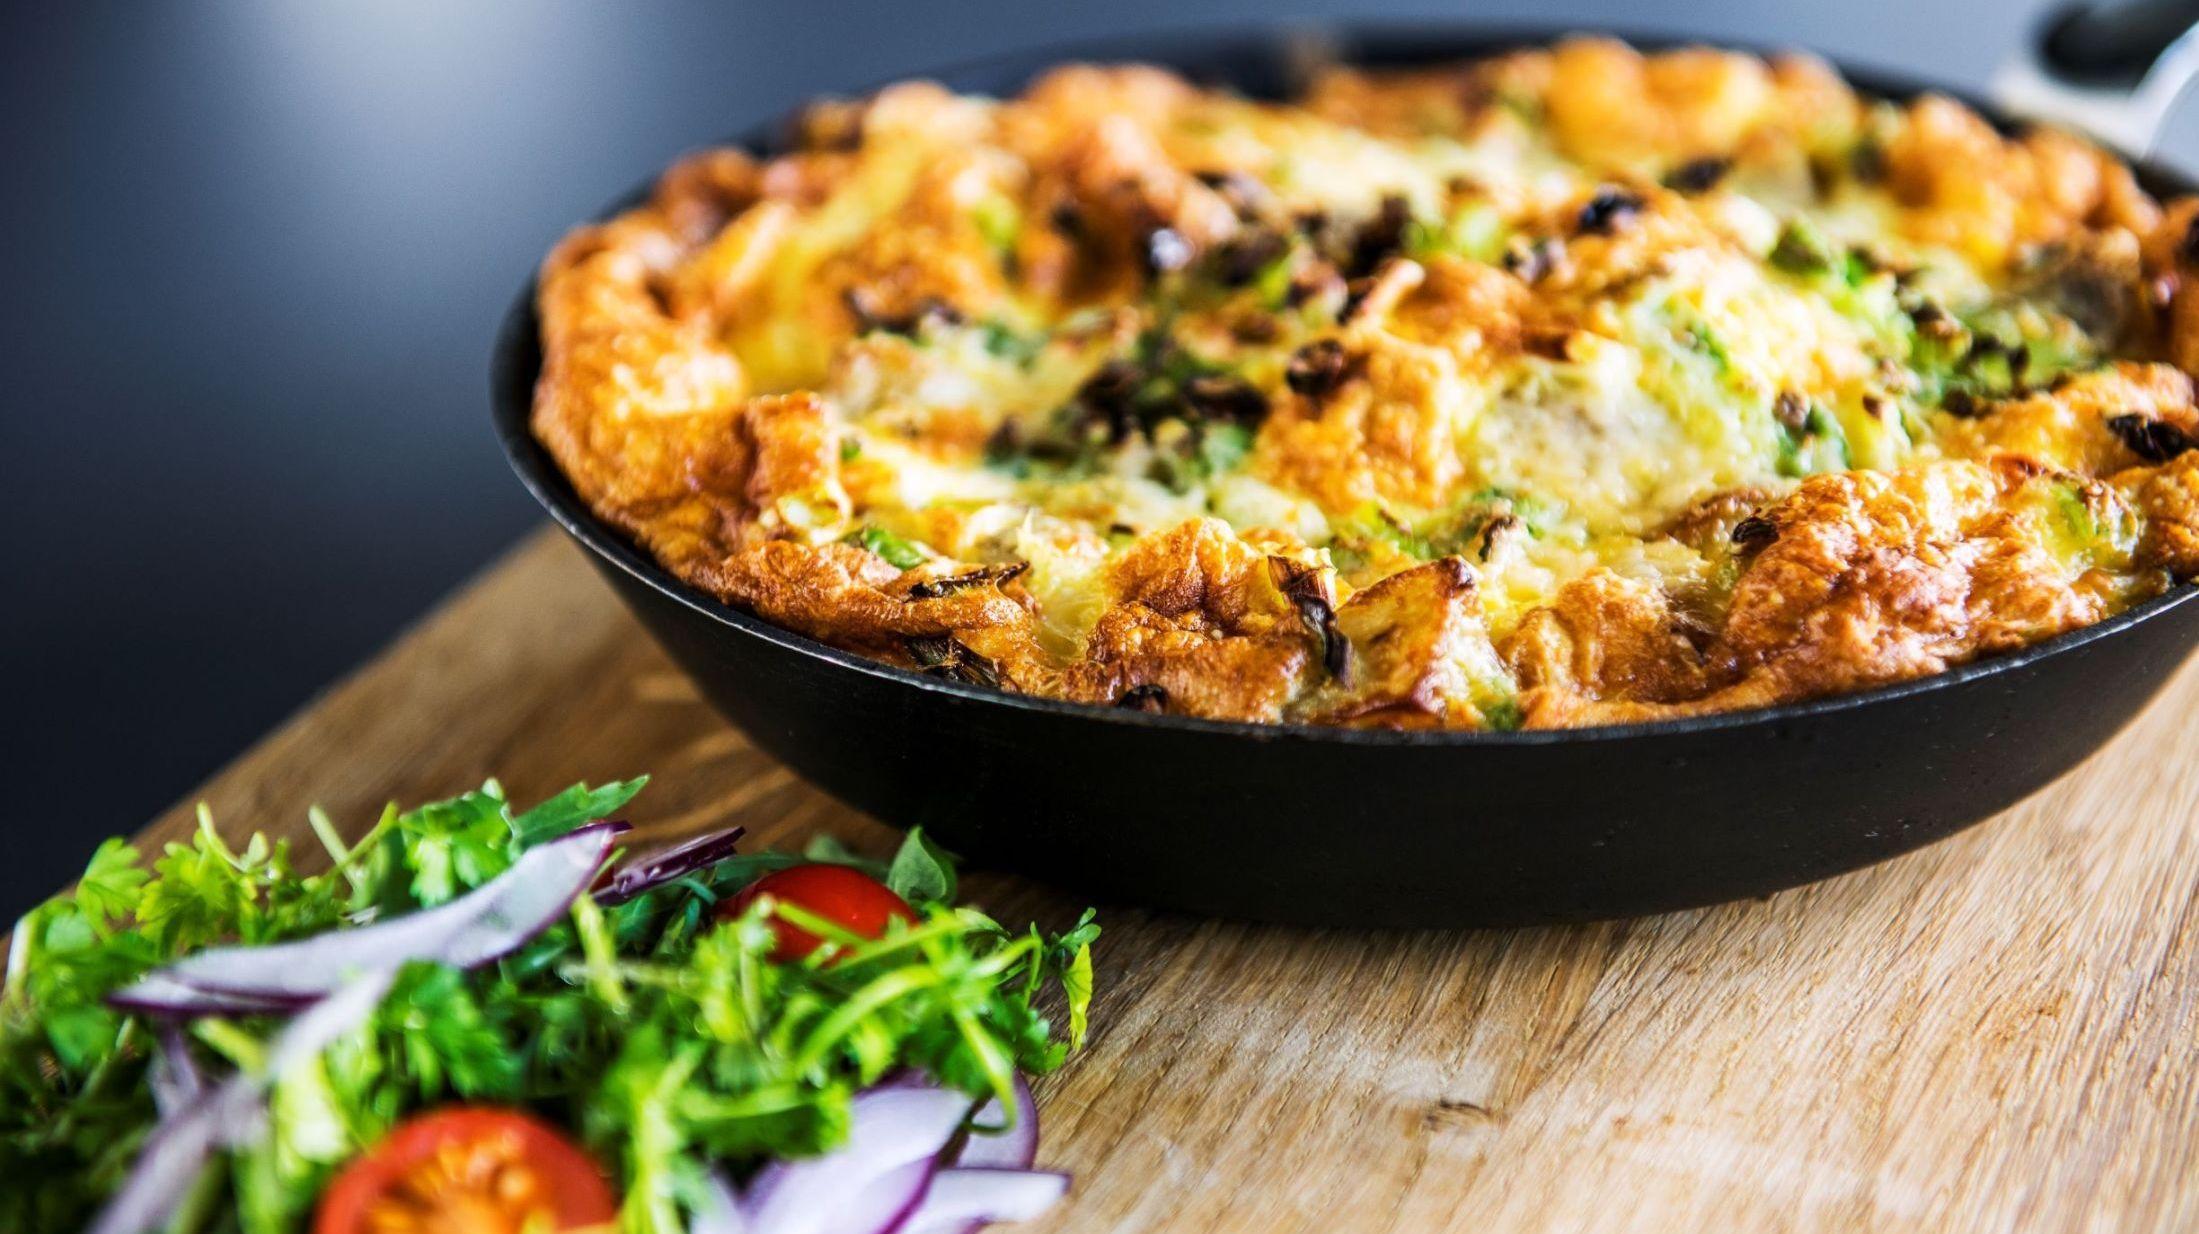 STEK I OVNEN: Et godt tips er å ta hele stekepannen med omeletten i ovnen. Slik får omletten en deilig stekeskorpe. Foto: Fredrik Ringe/VG